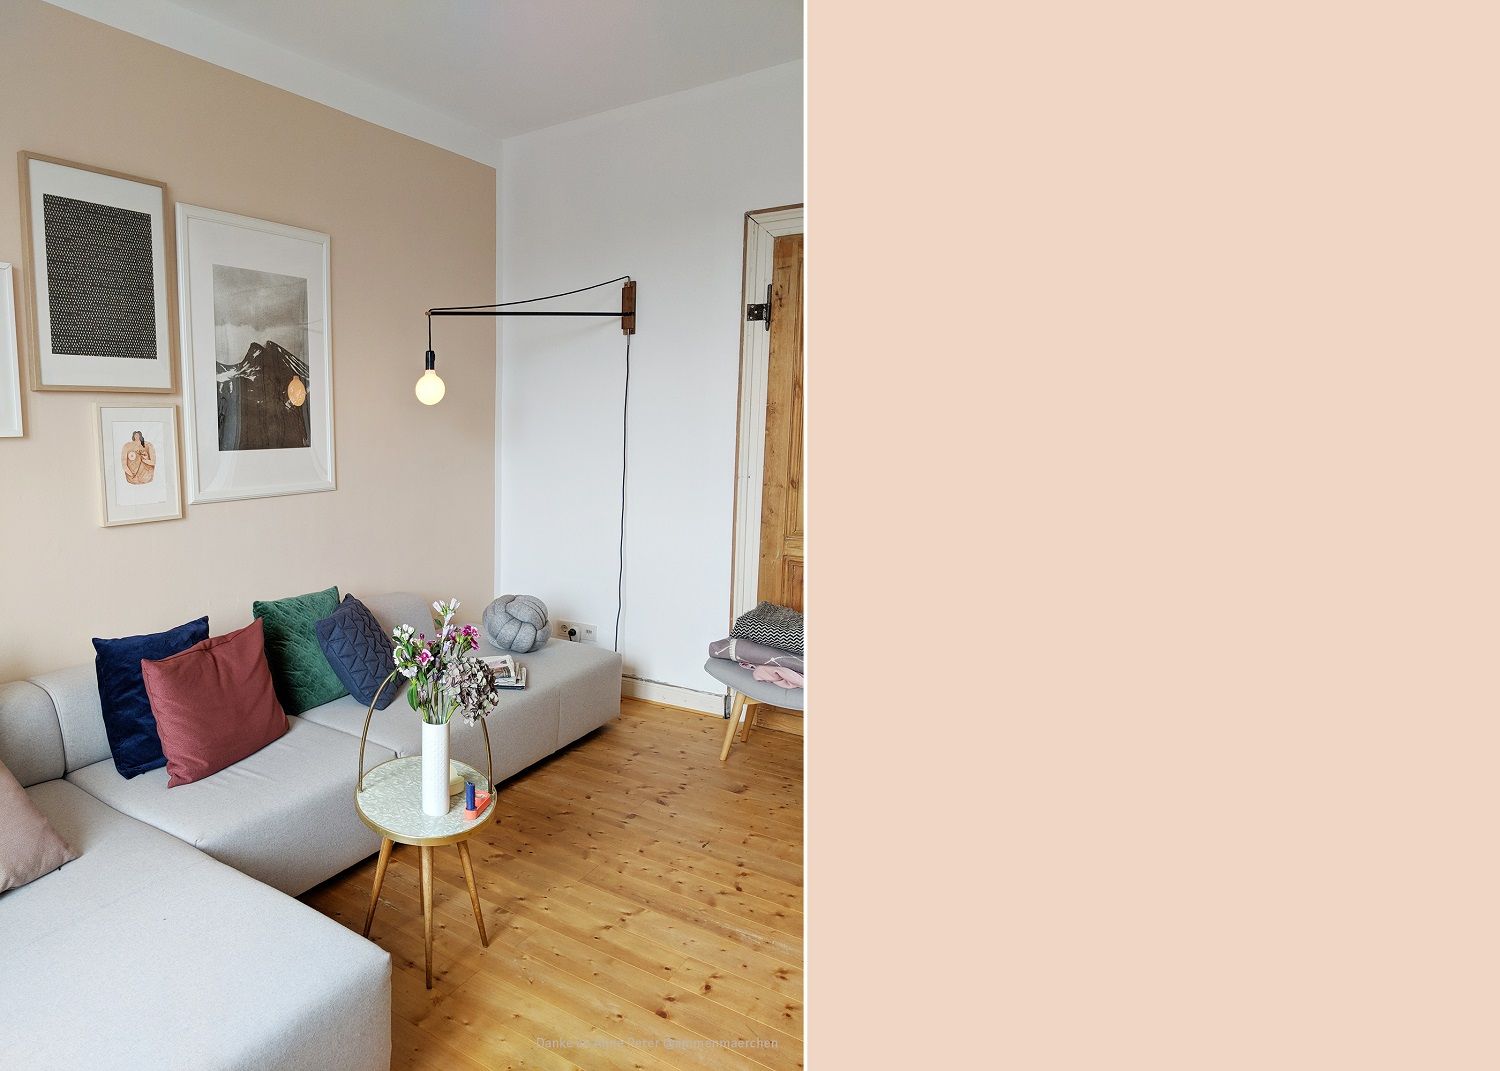 farbfreude: annes wohnzimmer in beige i kolorat